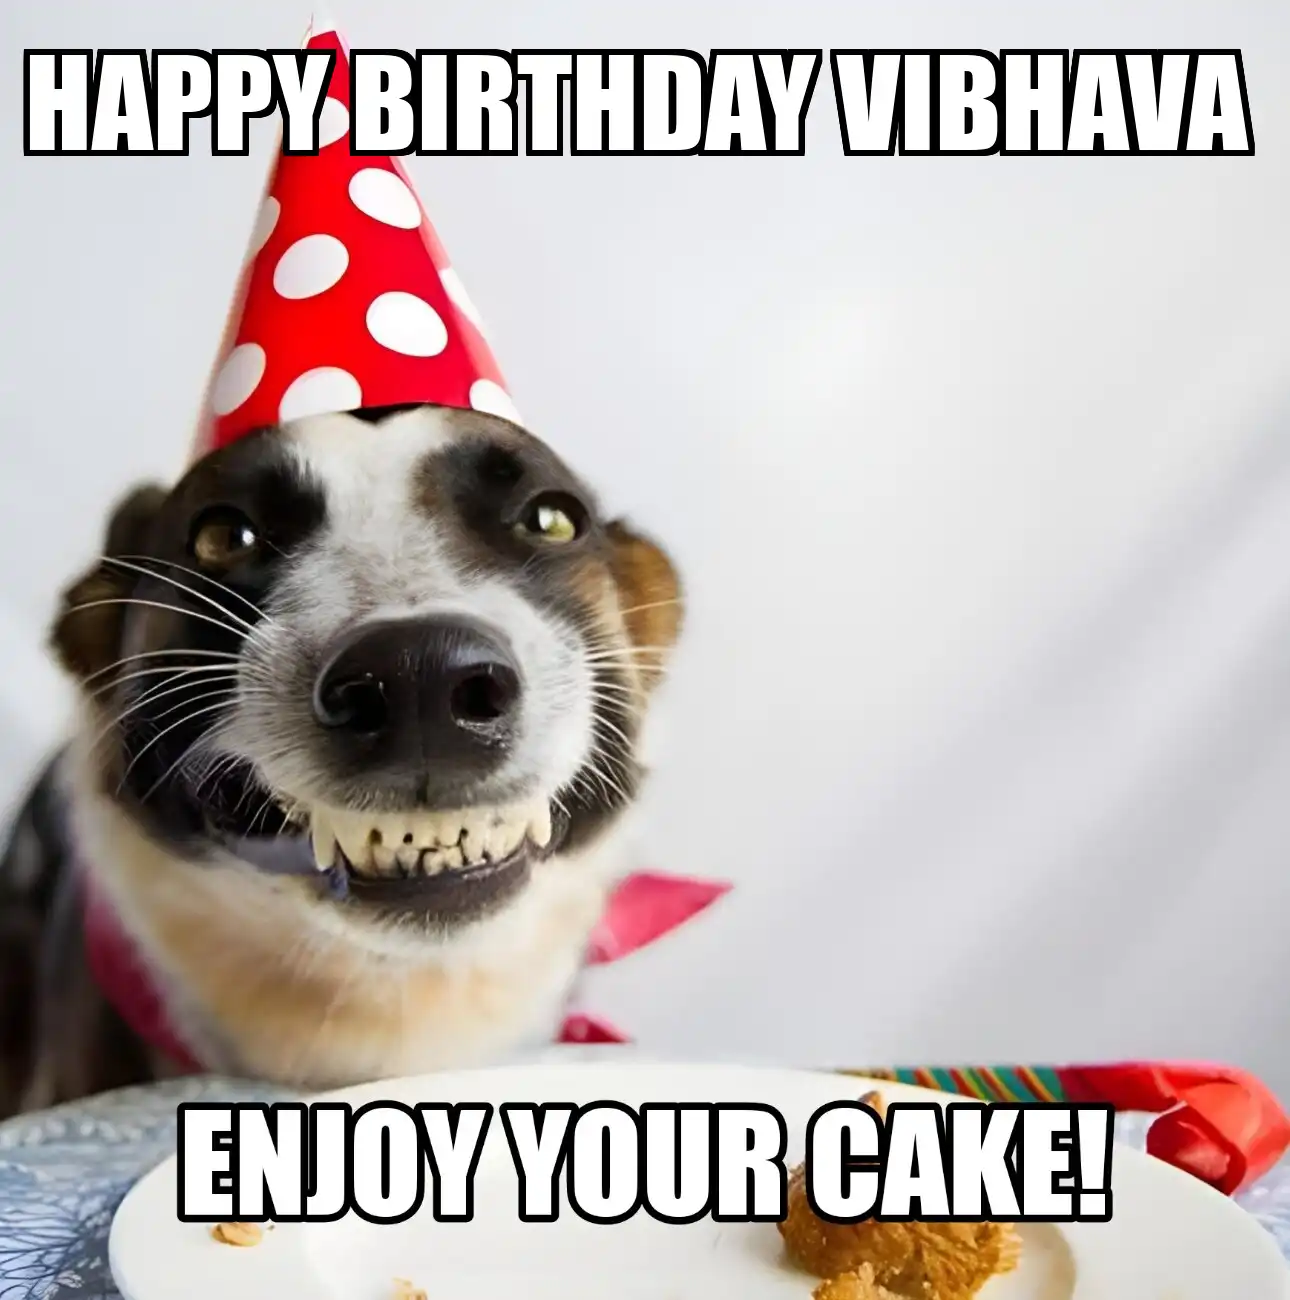 Happy Birthday Vibhava Enjoy Your Cake Dog Meme